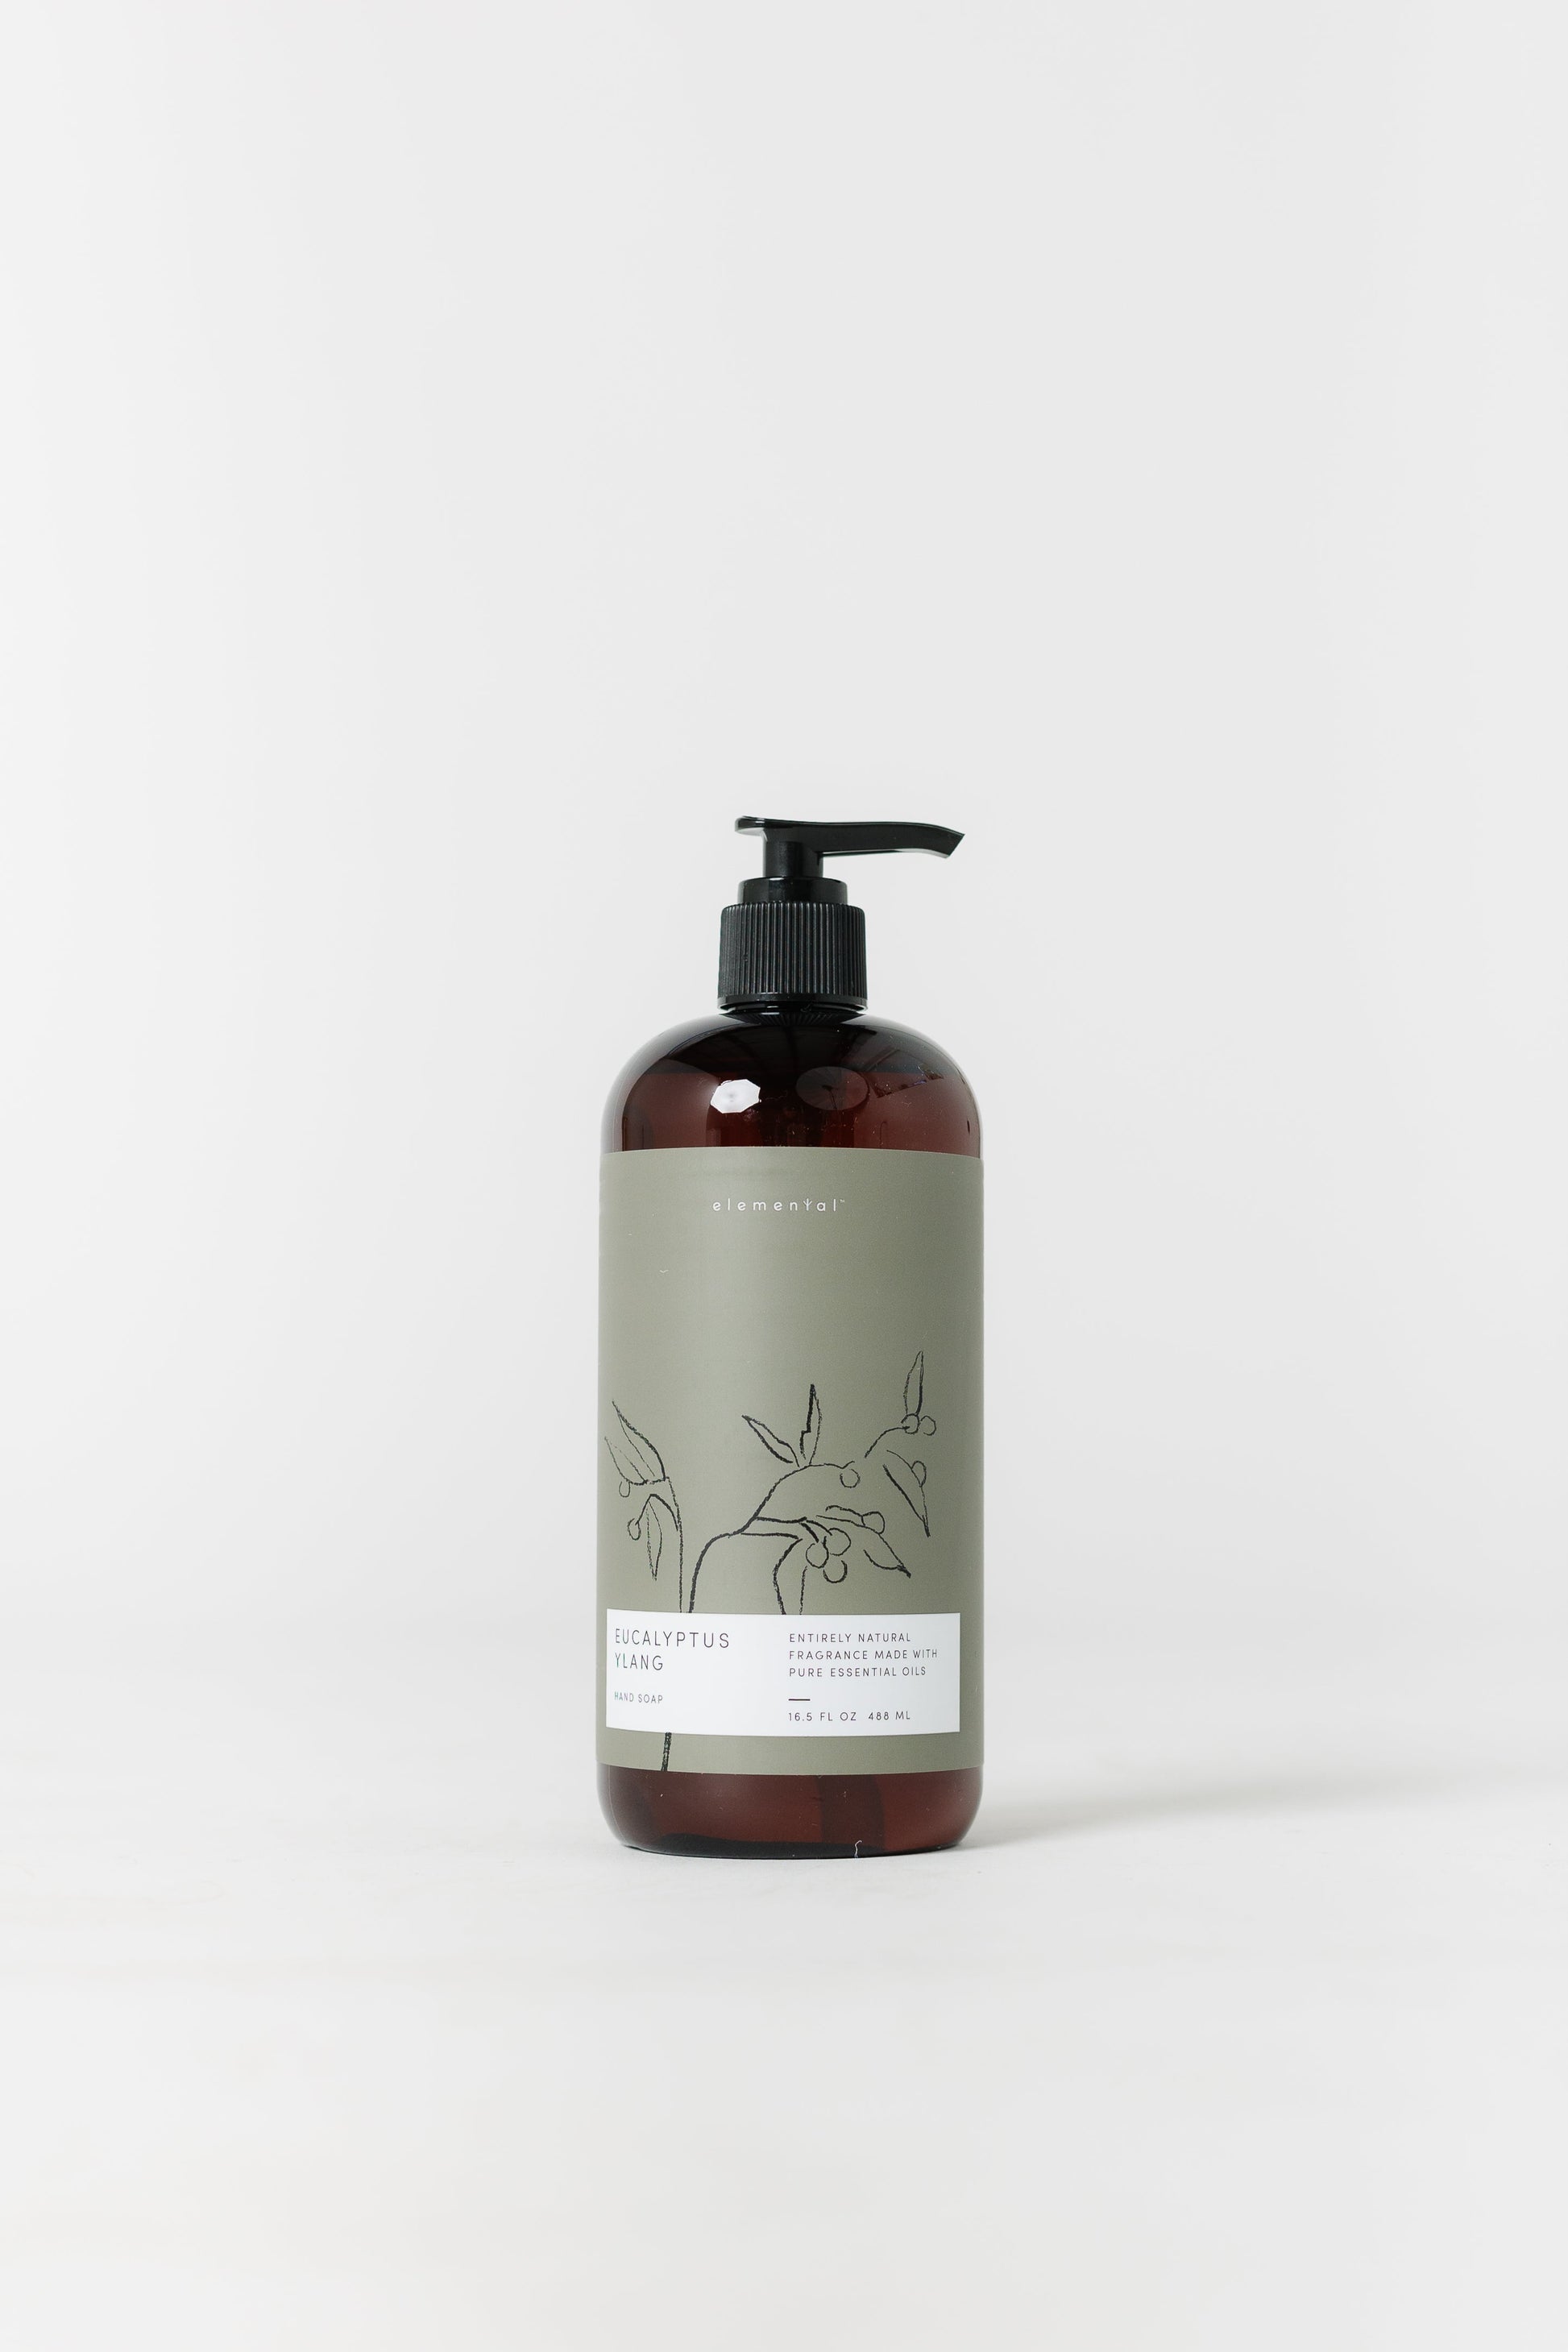 Illume Hand Soap SOAPS Illume Eucalyptus Ylang 16.6 oz 